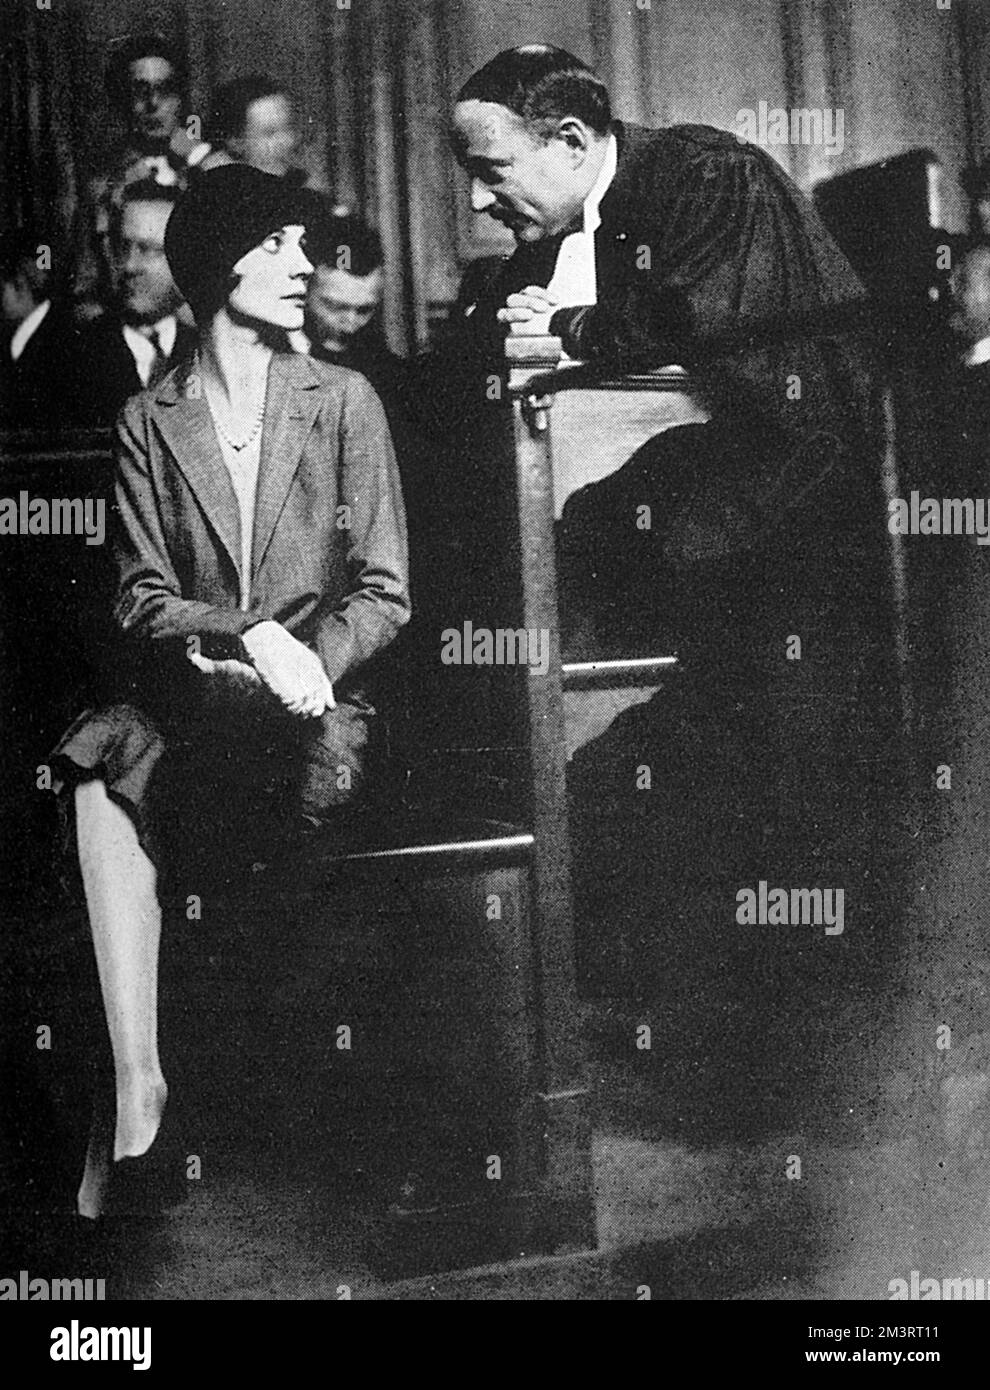 Alice de Janze, Comtesse de Janze und später Alice de Trafford (1899-1941), die vor Gericht in Paris vor Gericht gestellt wurde, wo sie wegen Erschießung ihres Liebhabers Raymond de Trafford am Gare du Nord vor Gericht stand. Sie war eine amerikanische Erbin, die Jahre als Mitglied des Happy Valley Sets in Kenia verbrachte und mit zahlreichen Skandalen in Verbindung stand, einschließlich des versuchten Mordes an ihrem Geliebten im Jahr 1927 und des 1941. Mordes am 22.. Earl of Erroll in Kenia. Ihr stürmisches Leben war geprägt von Promiskuität, Drogenmissbrauch und mehreren Selbstmordversuchen. Sie und Raymond überlebten die Schießerei, sie wurde mit nur 100 Francs und Eventa bestraft Stockfoto